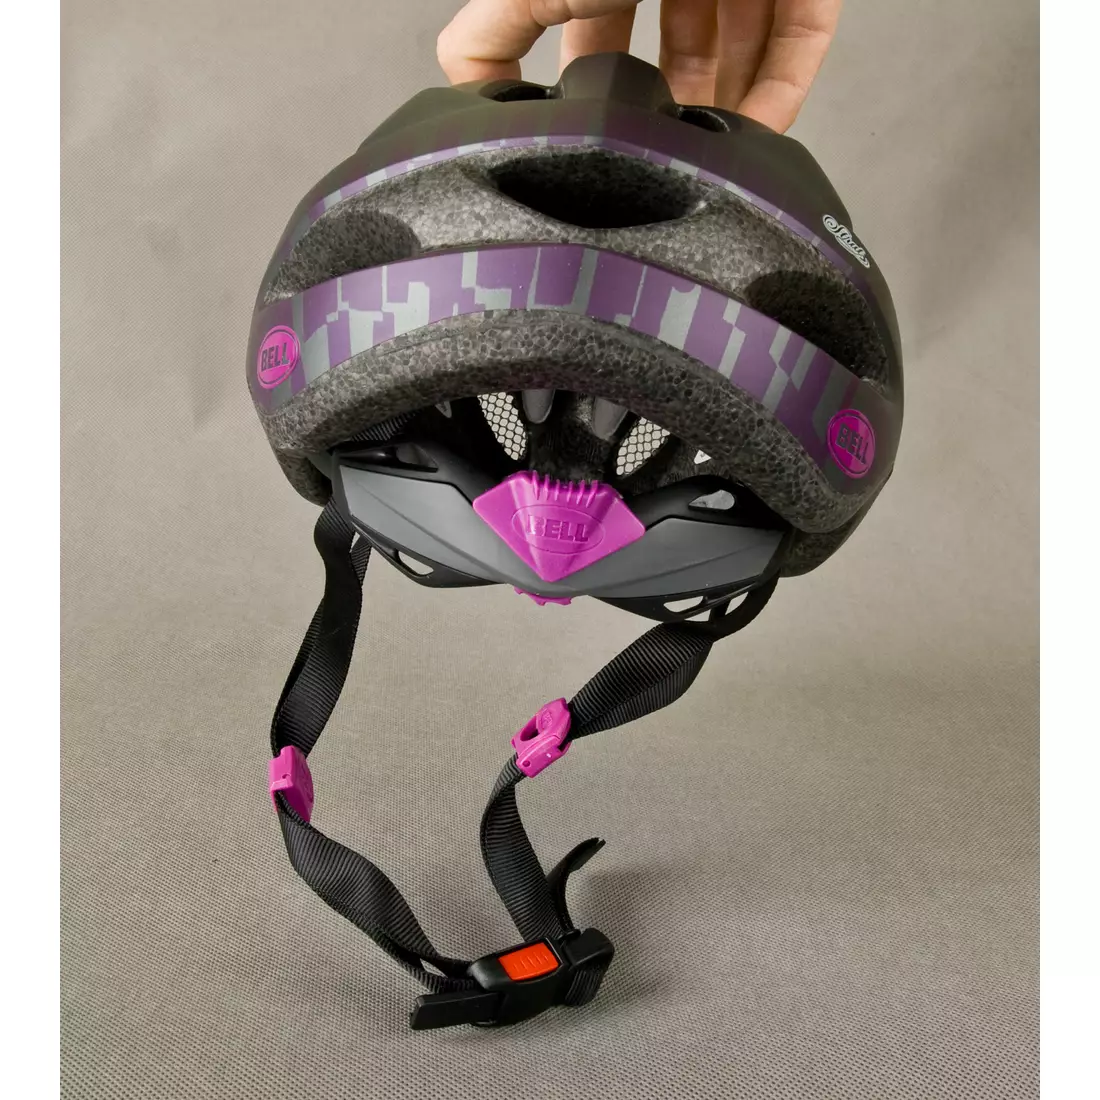 BELL damski kask rowerowy STRUT titanium-purple mat